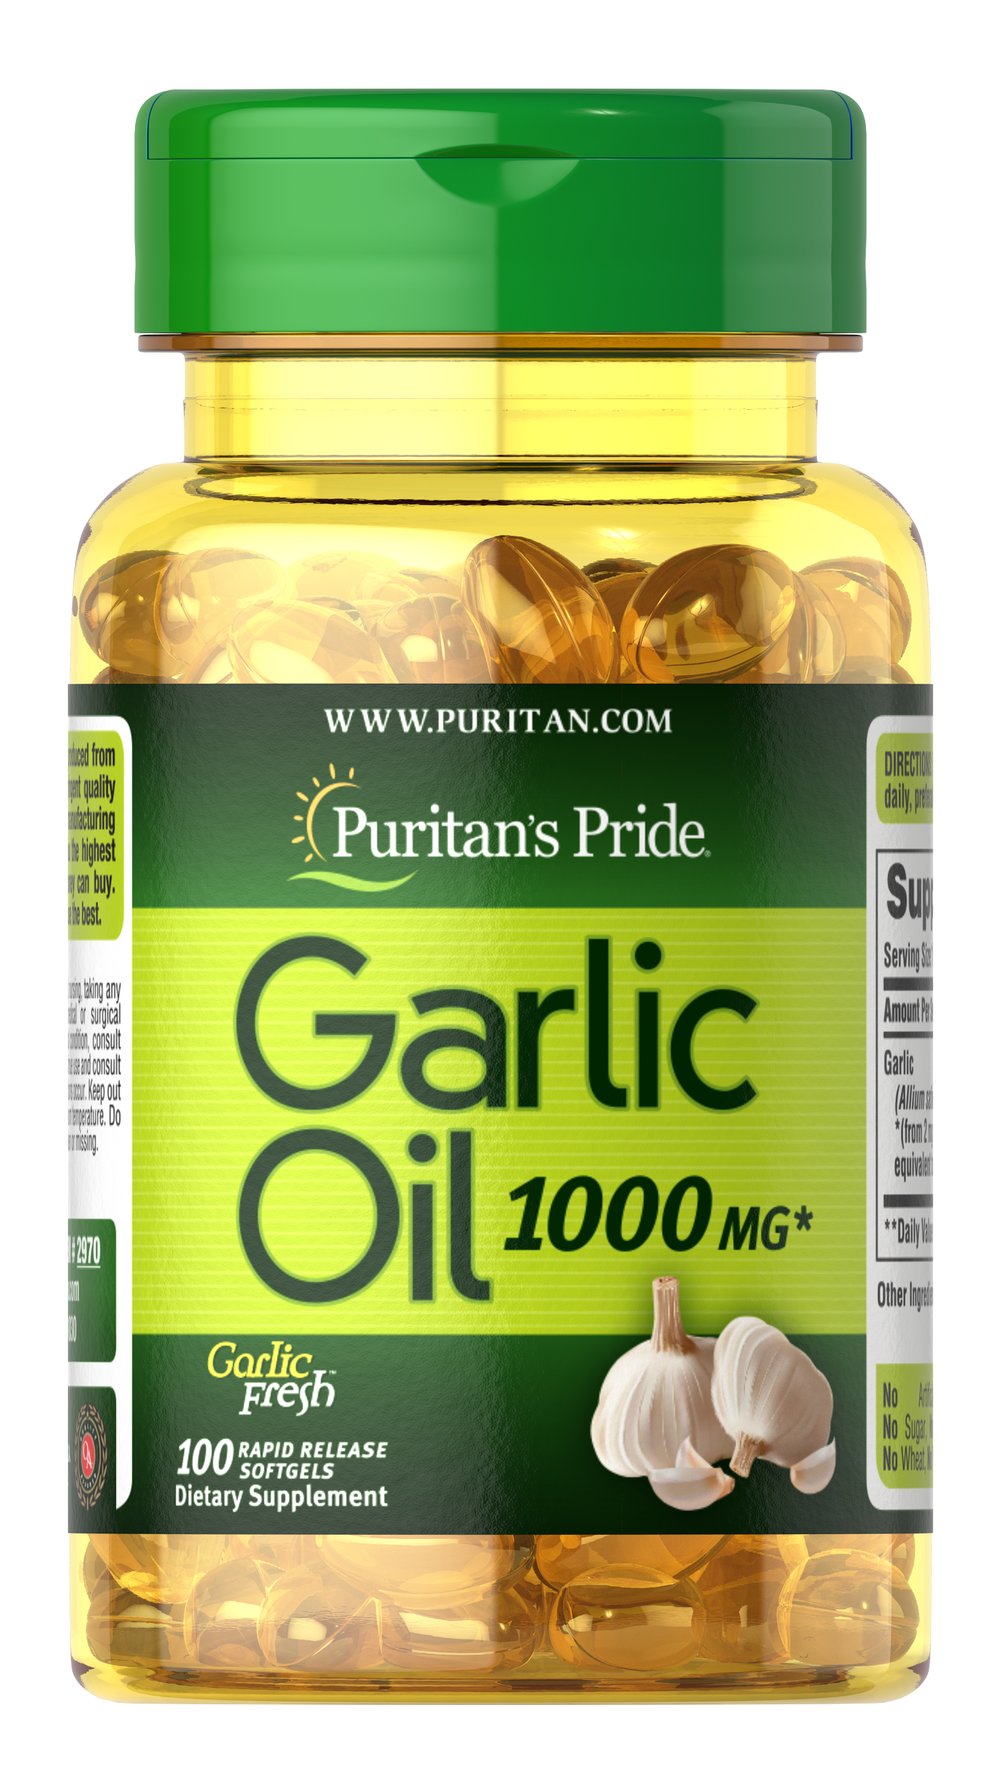 Tinh dầu tỏi Garlic Oil Puritan's Pride Mỹ giúp tăng sức đề kháng, giảm lượng cholesterol, phòng xơ vữa mạch, cao huyết áp - Massel Official-100viên/lọ